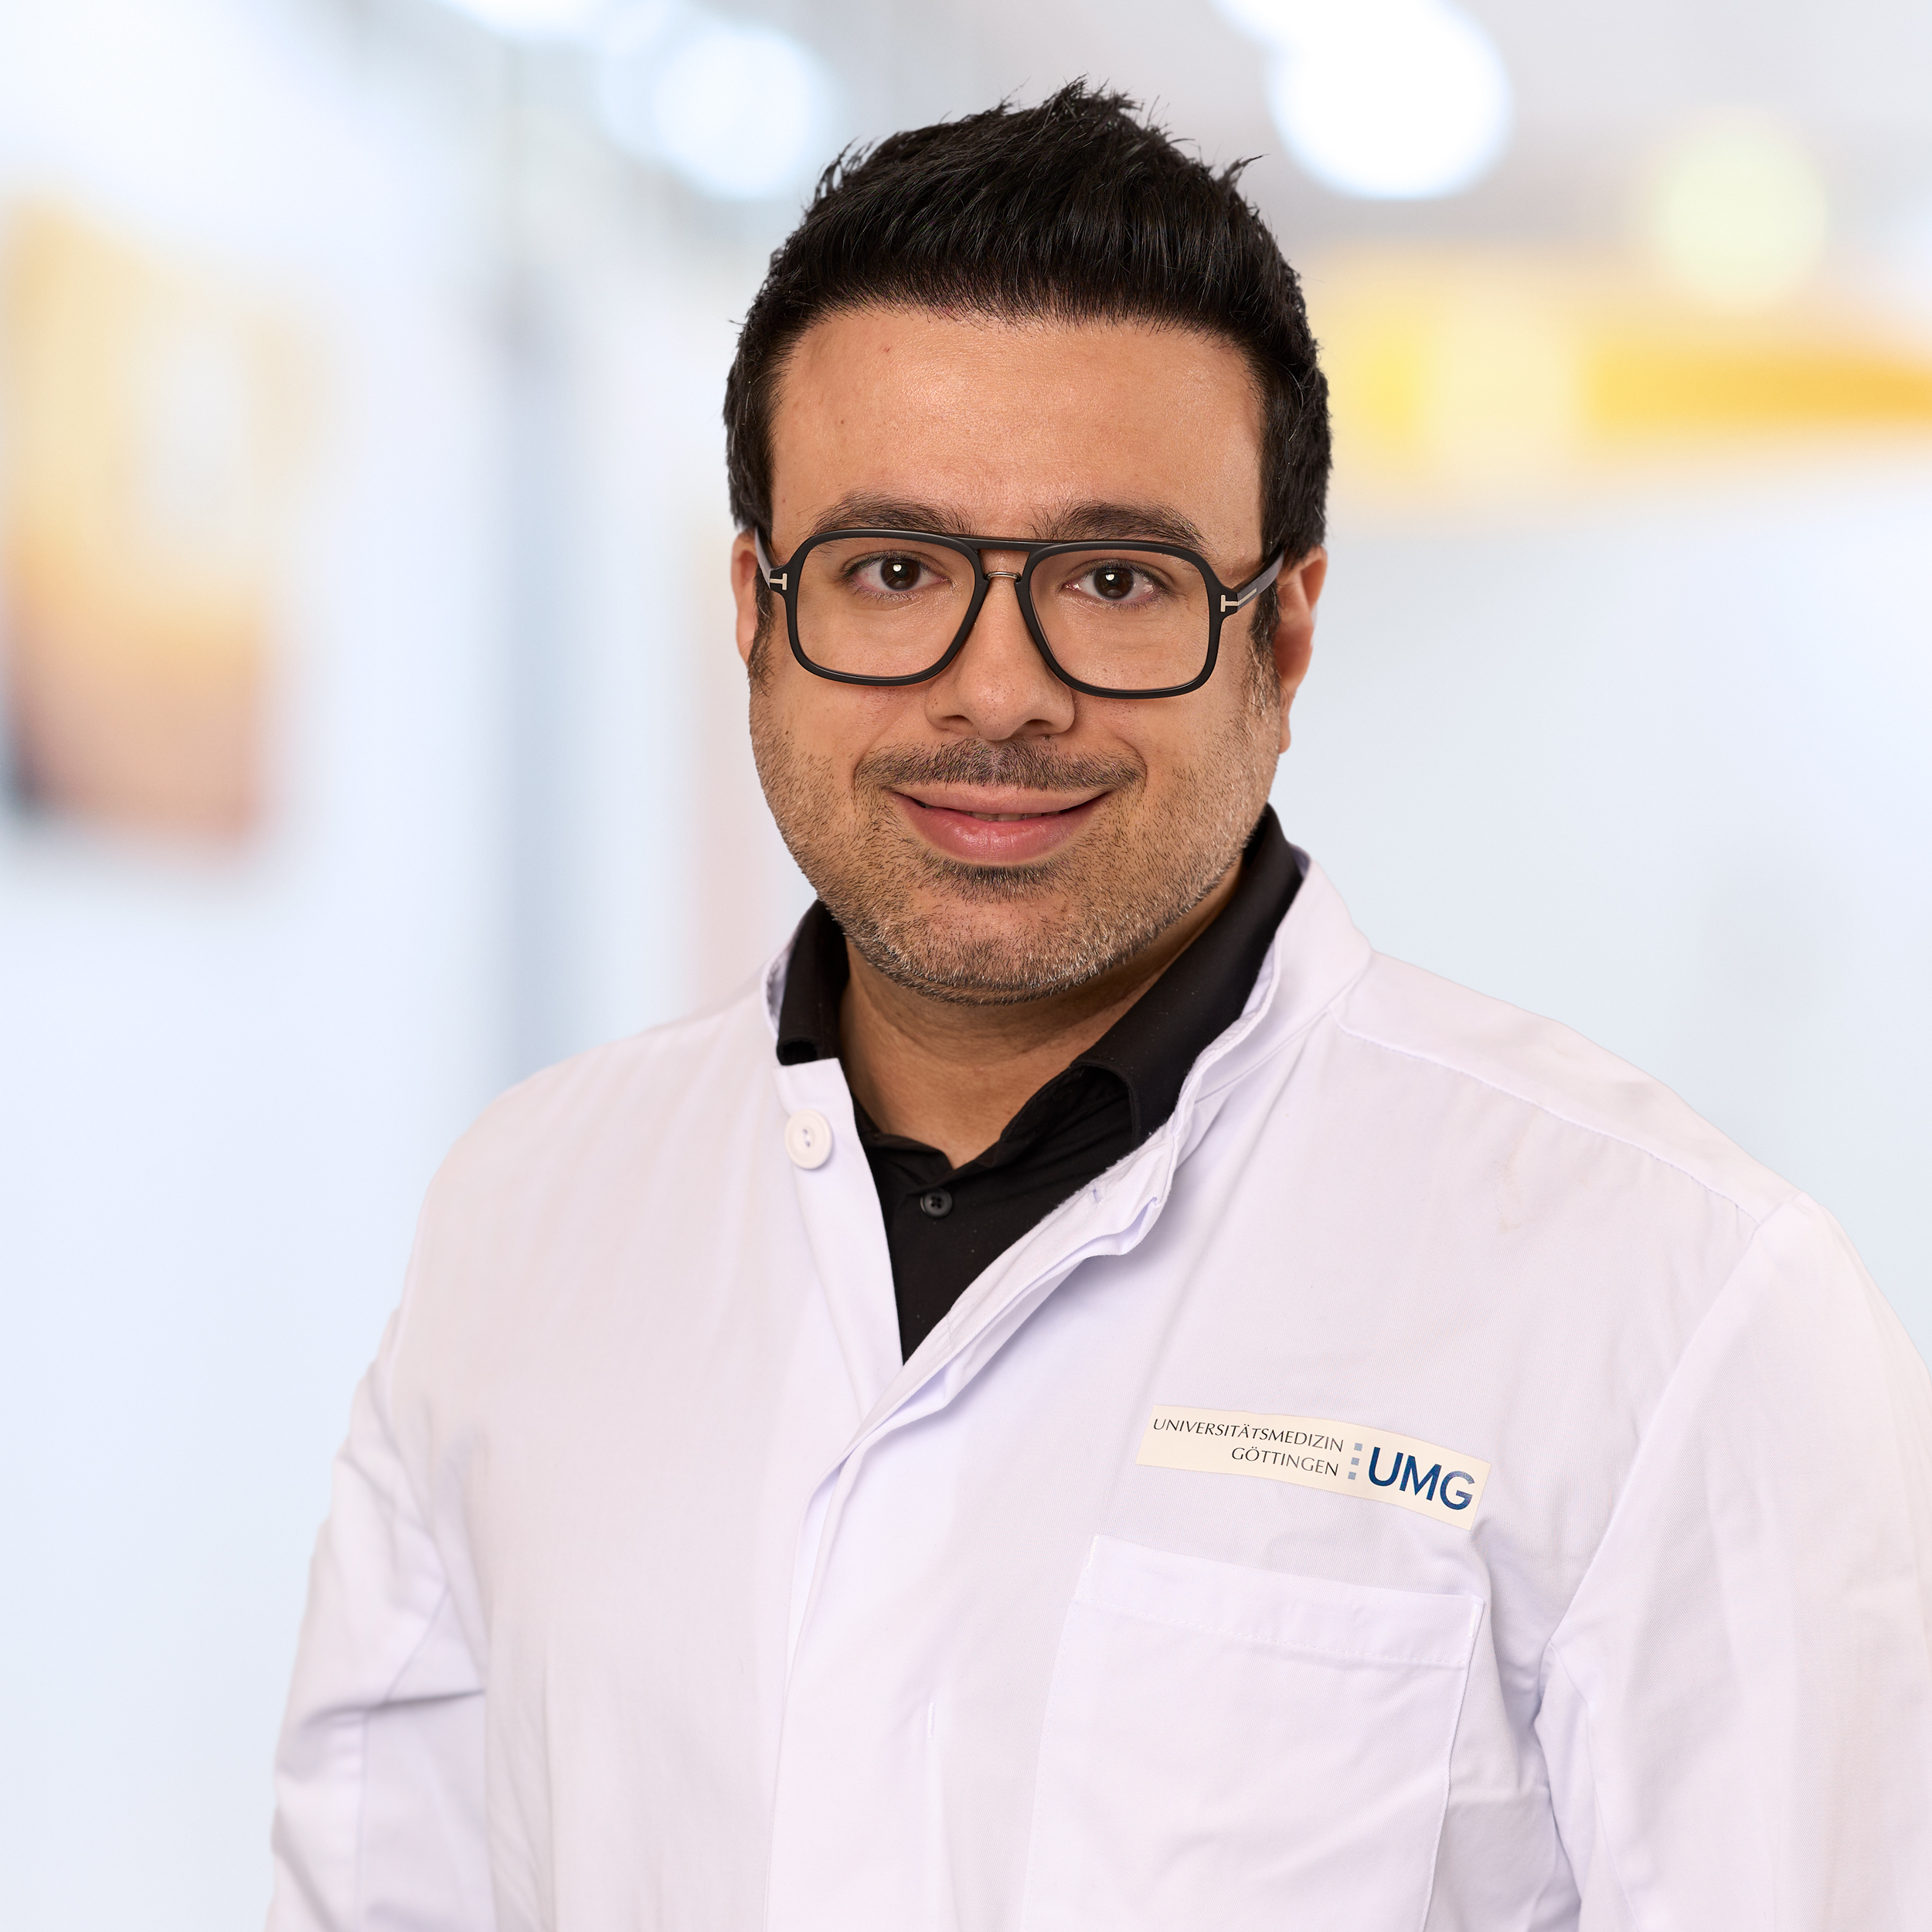 Dr. Amir Emami